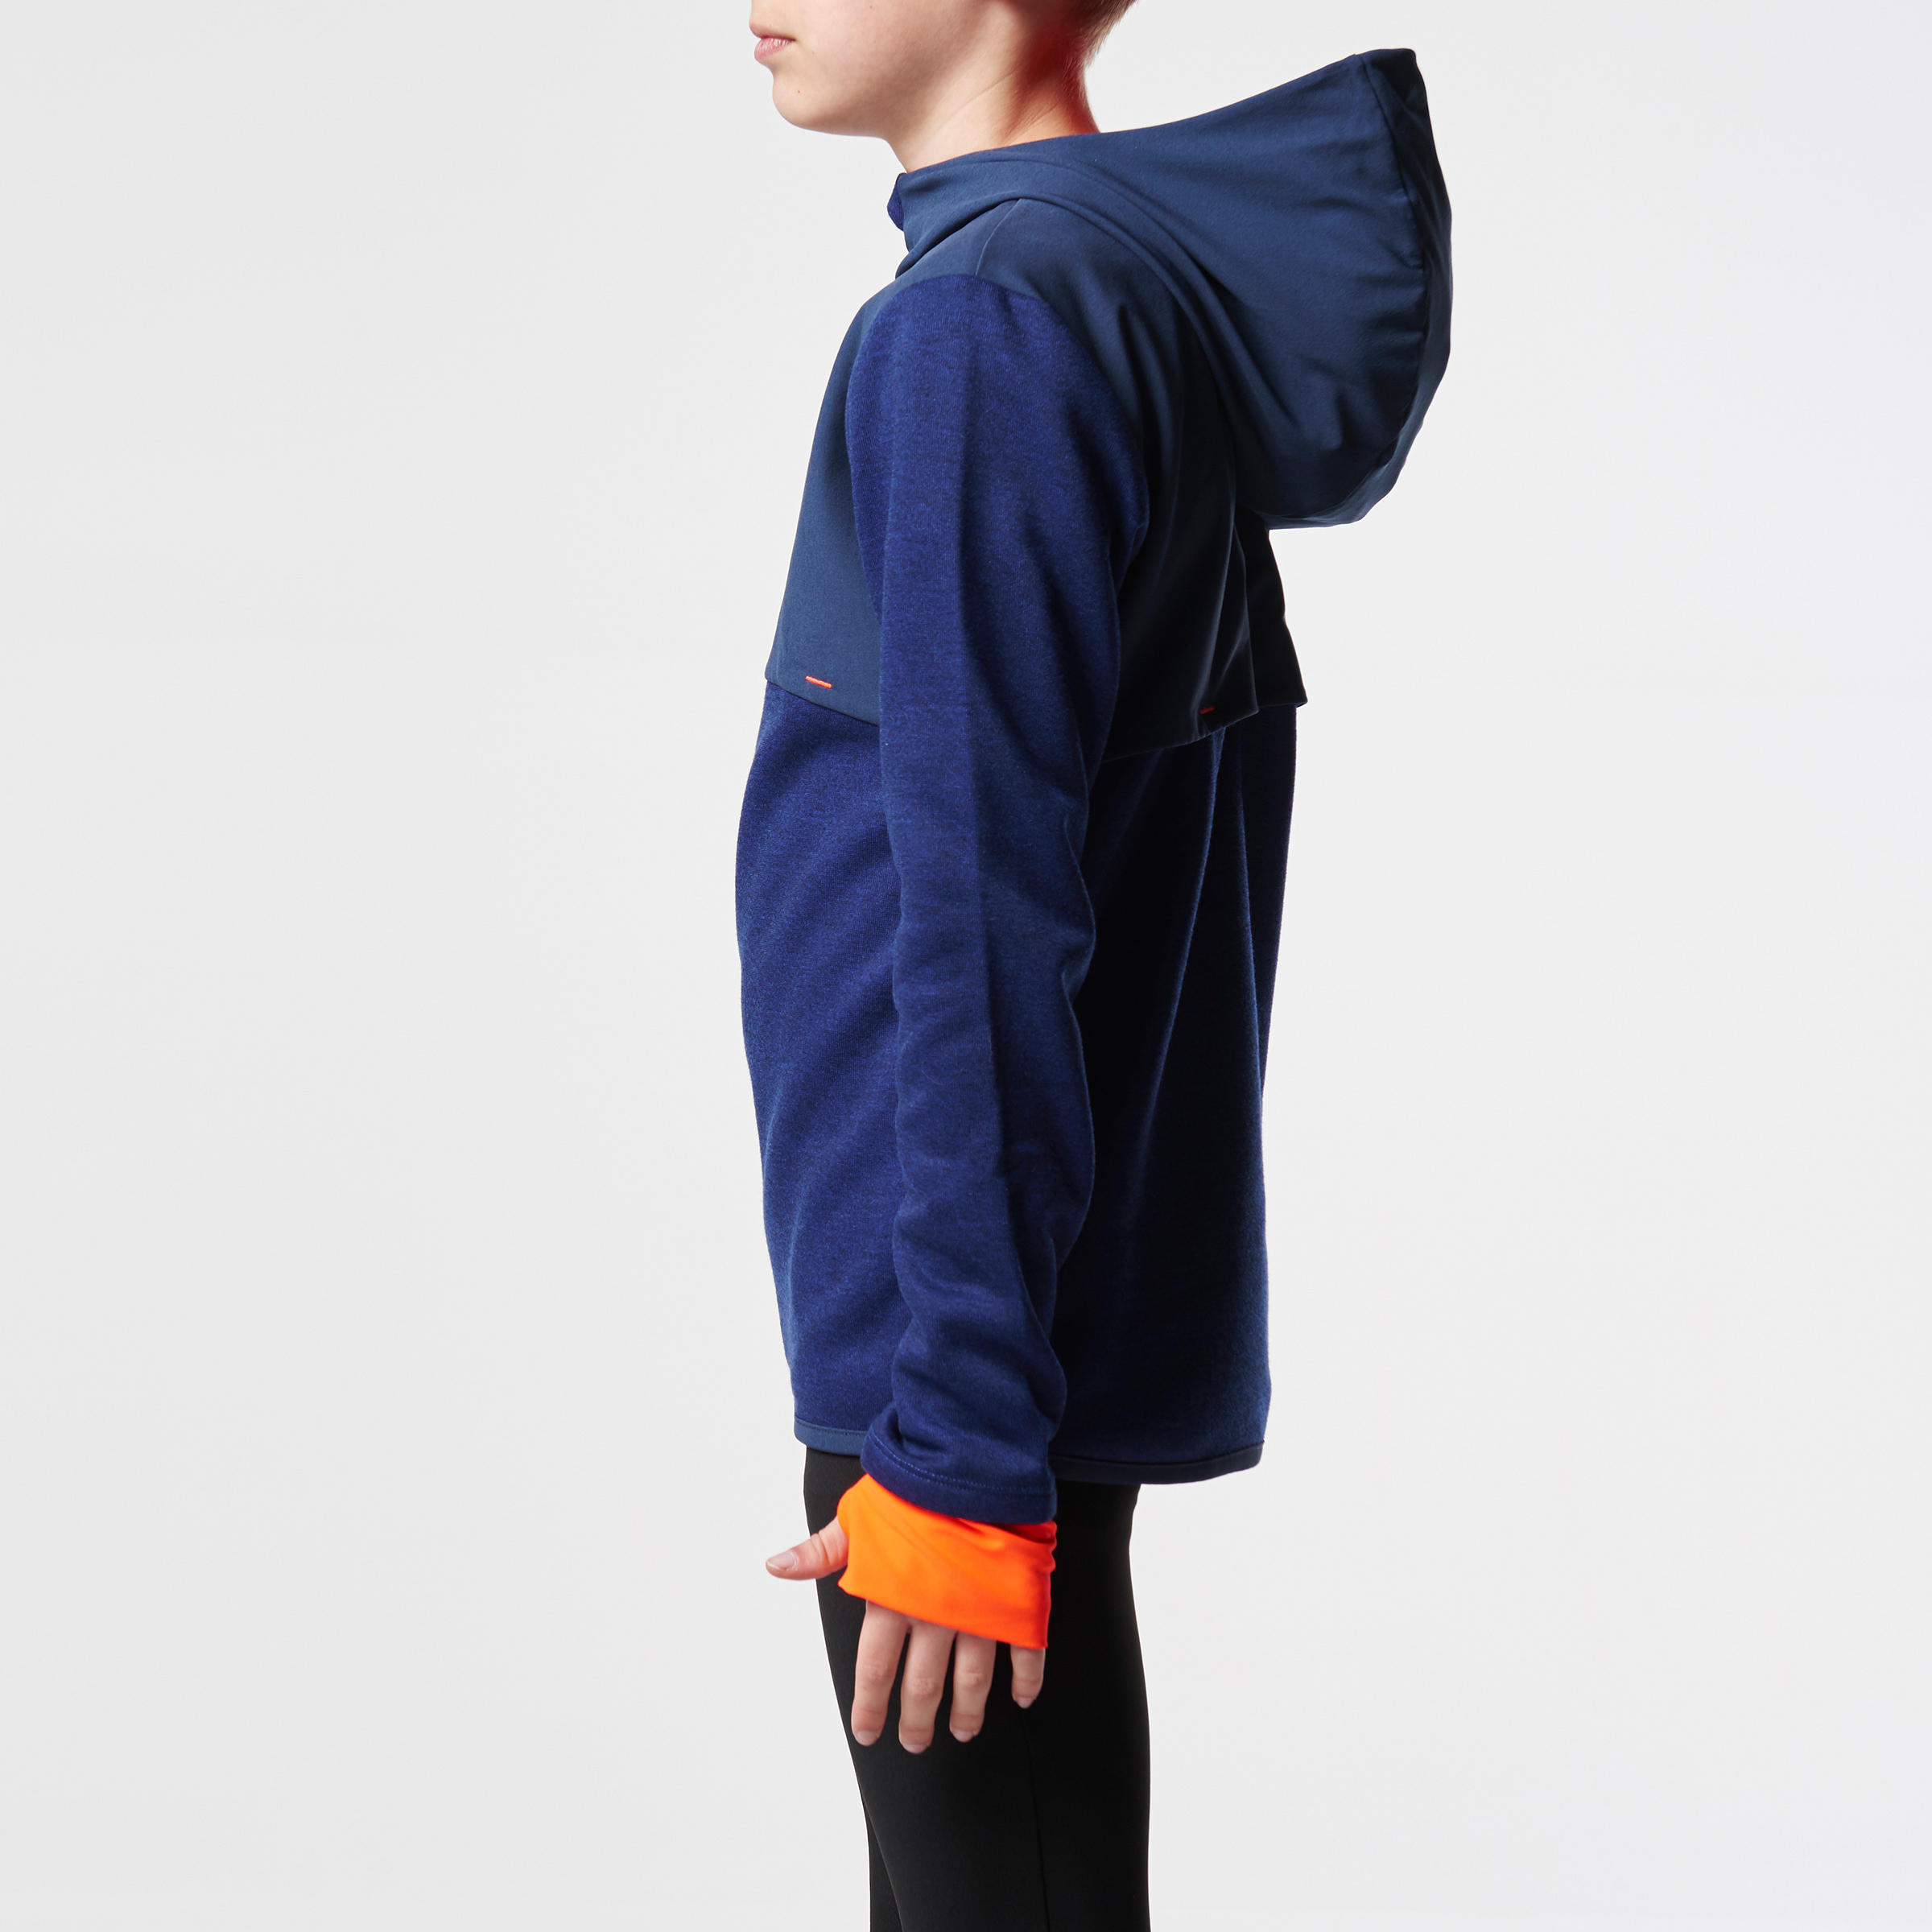 Elio Children's Running Hooded Jersey - Blue/Orange
 4/15